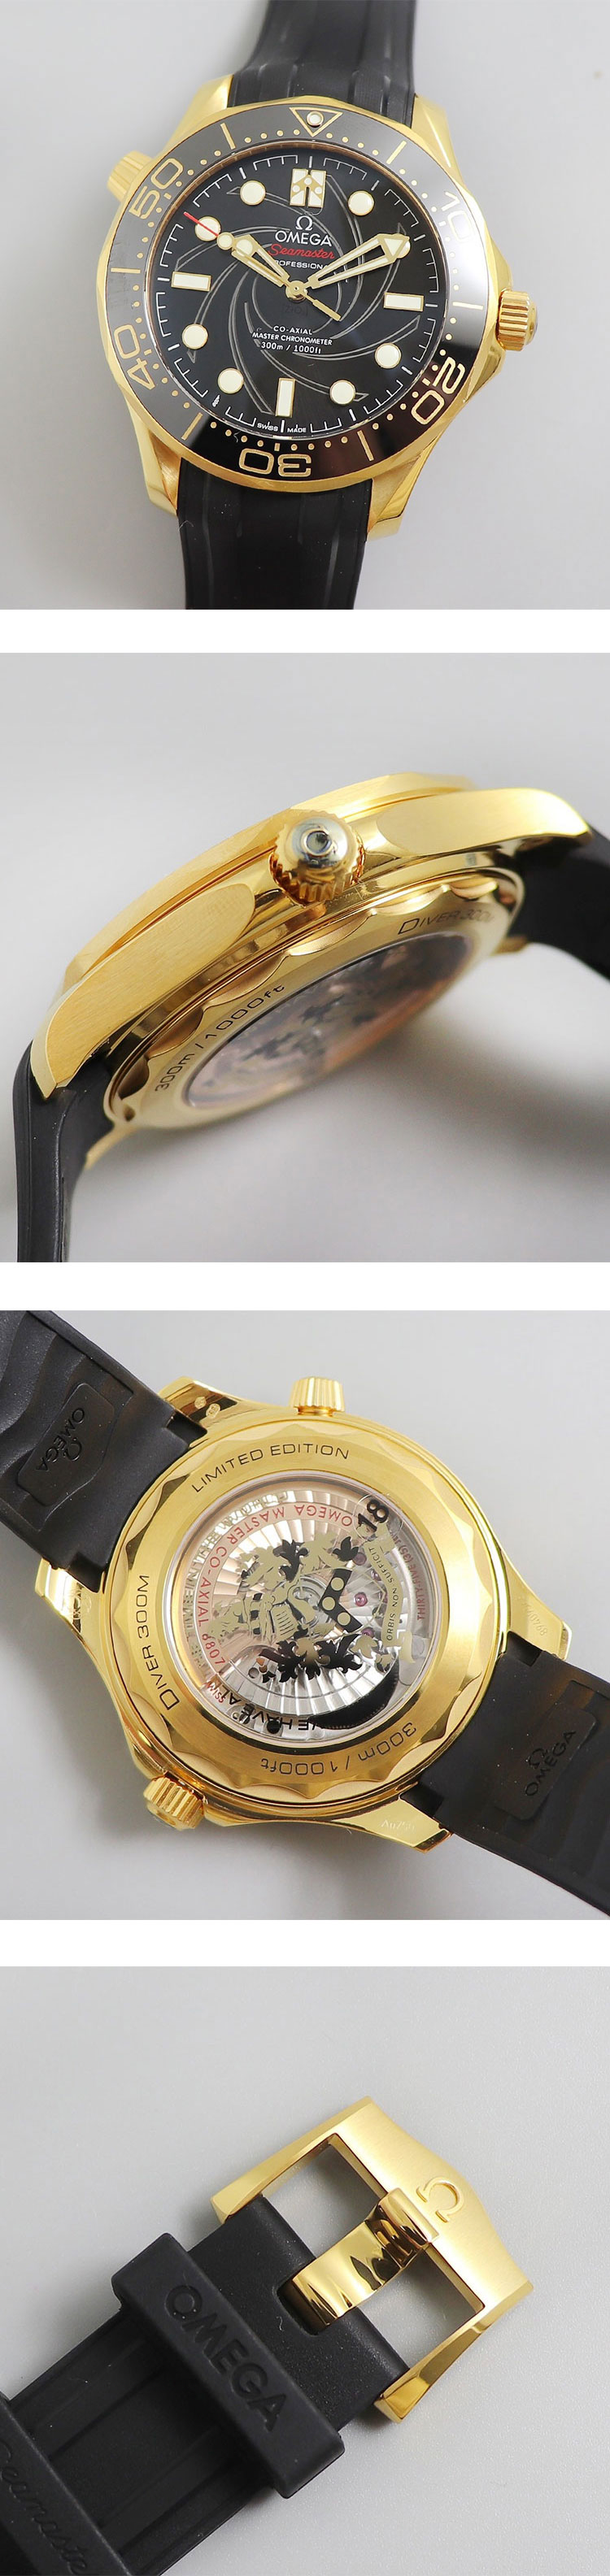 ブランド時計コピーオメガ 210.62.42.20.01.001 シーマスター ダイバー 300M ジェームズ・ボンド リミテッドエディション セット